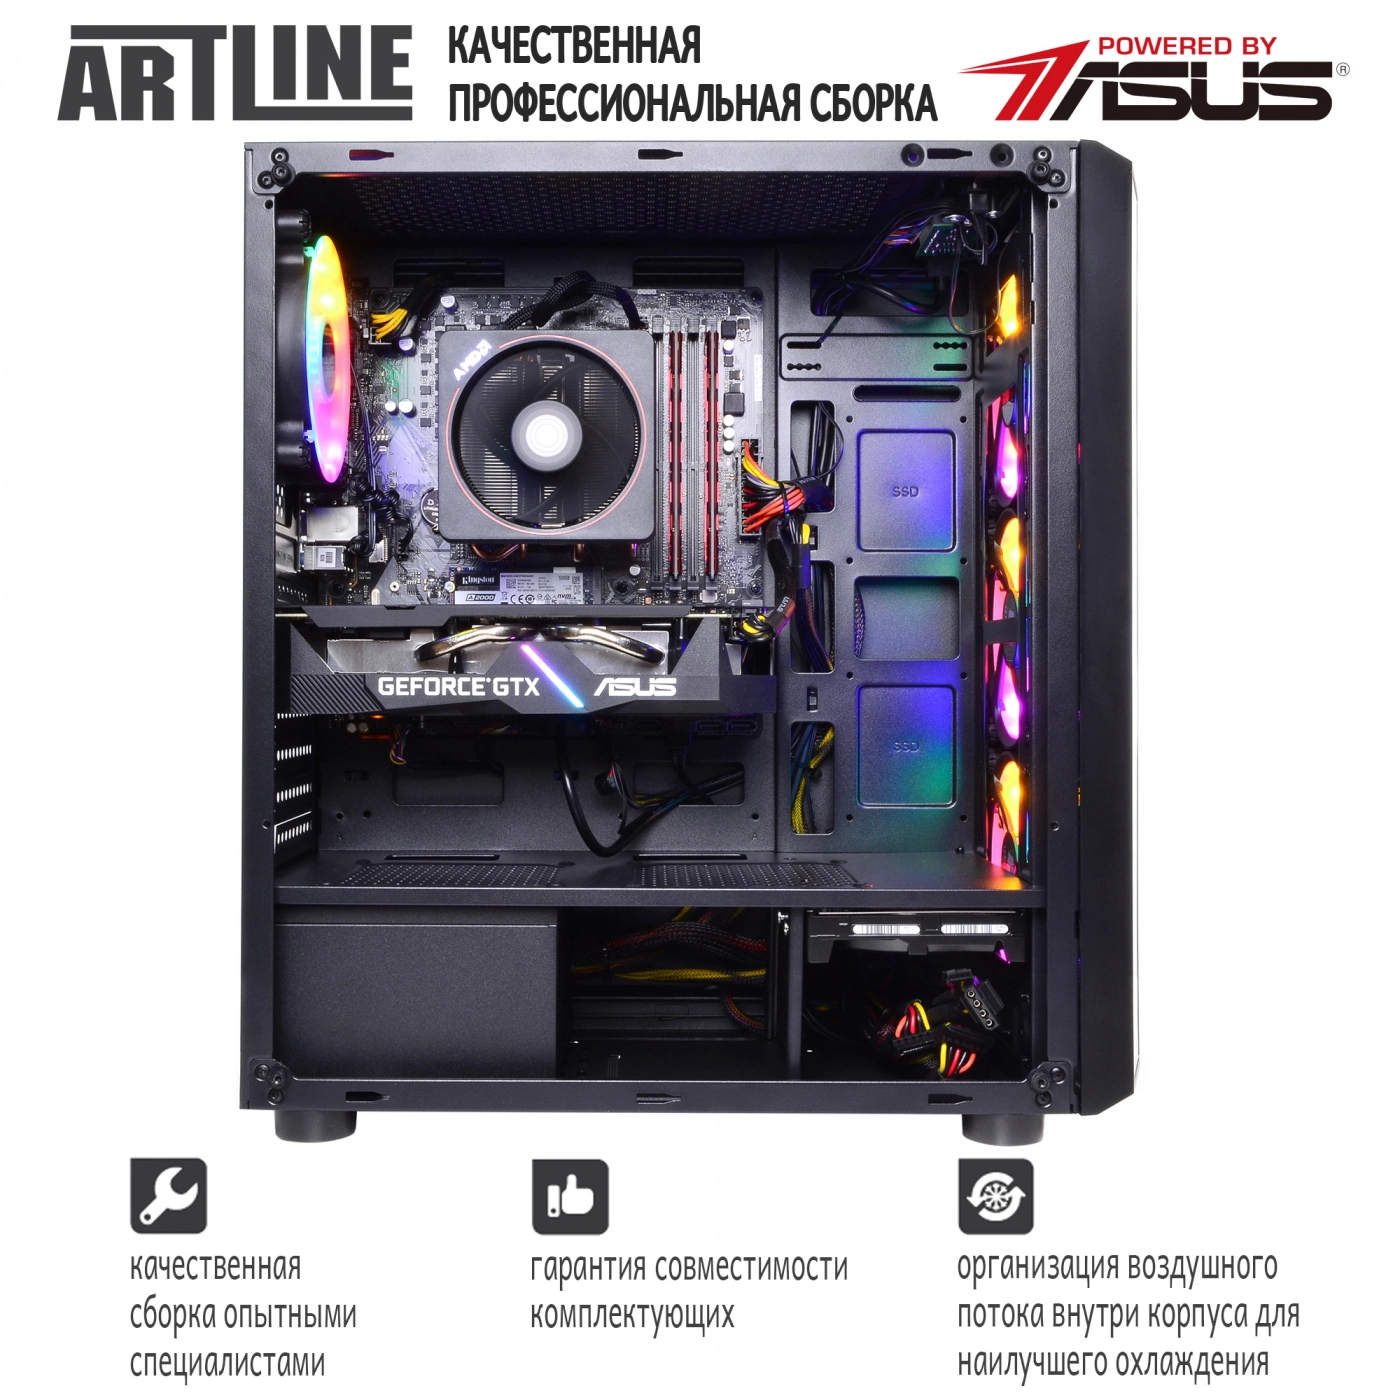 Купить Компьютер ARTLINE Gaming X43v15 - фото 7